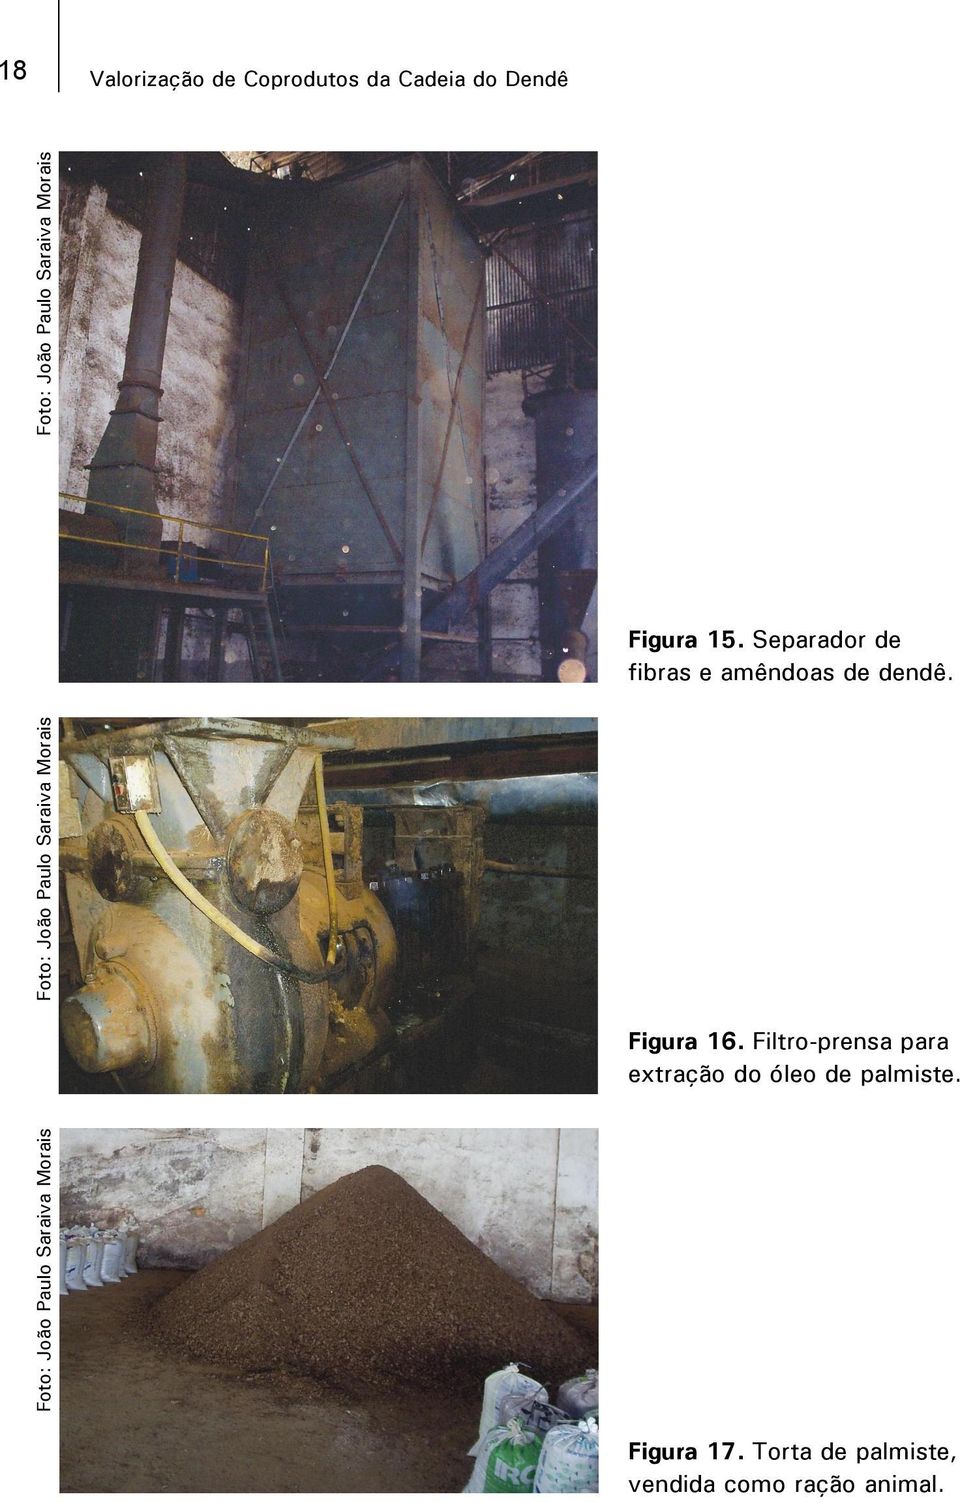 Filtro-prensa para extração do óleo de palmiste.